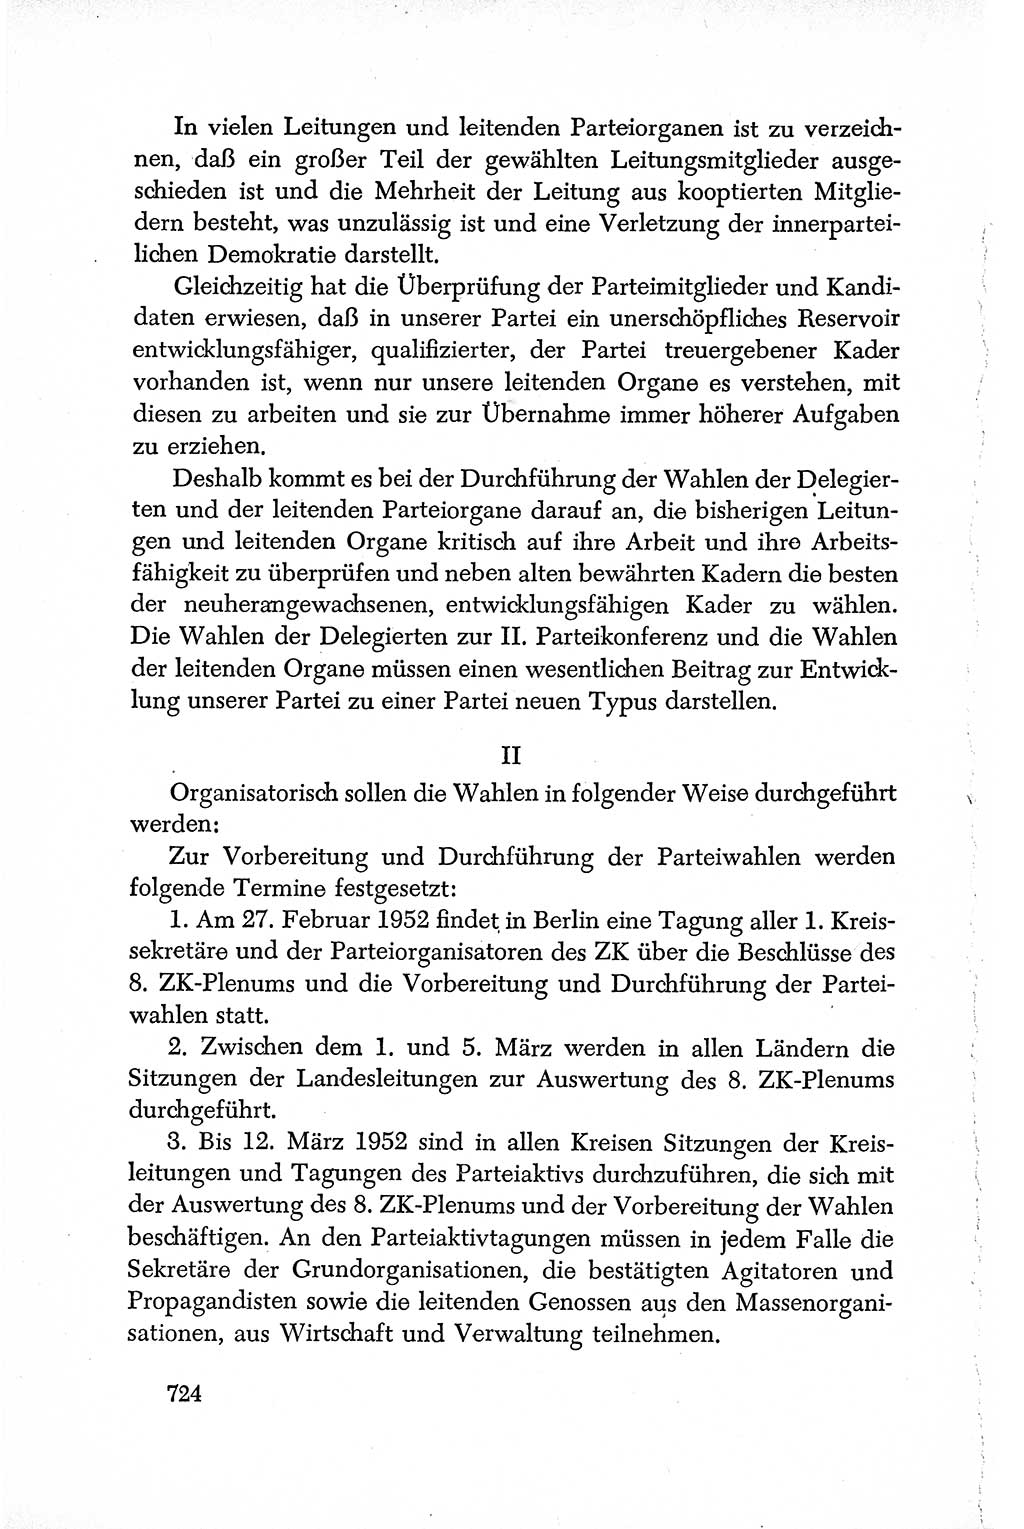 Dokumente der Sozialistischen Einheitspartei Deutschlands (SED) [Deutsche Demokratische Republik (DDR)] 1950-1952, Seite 724 (Dok. SED DDR 1950-1952, S. 724)